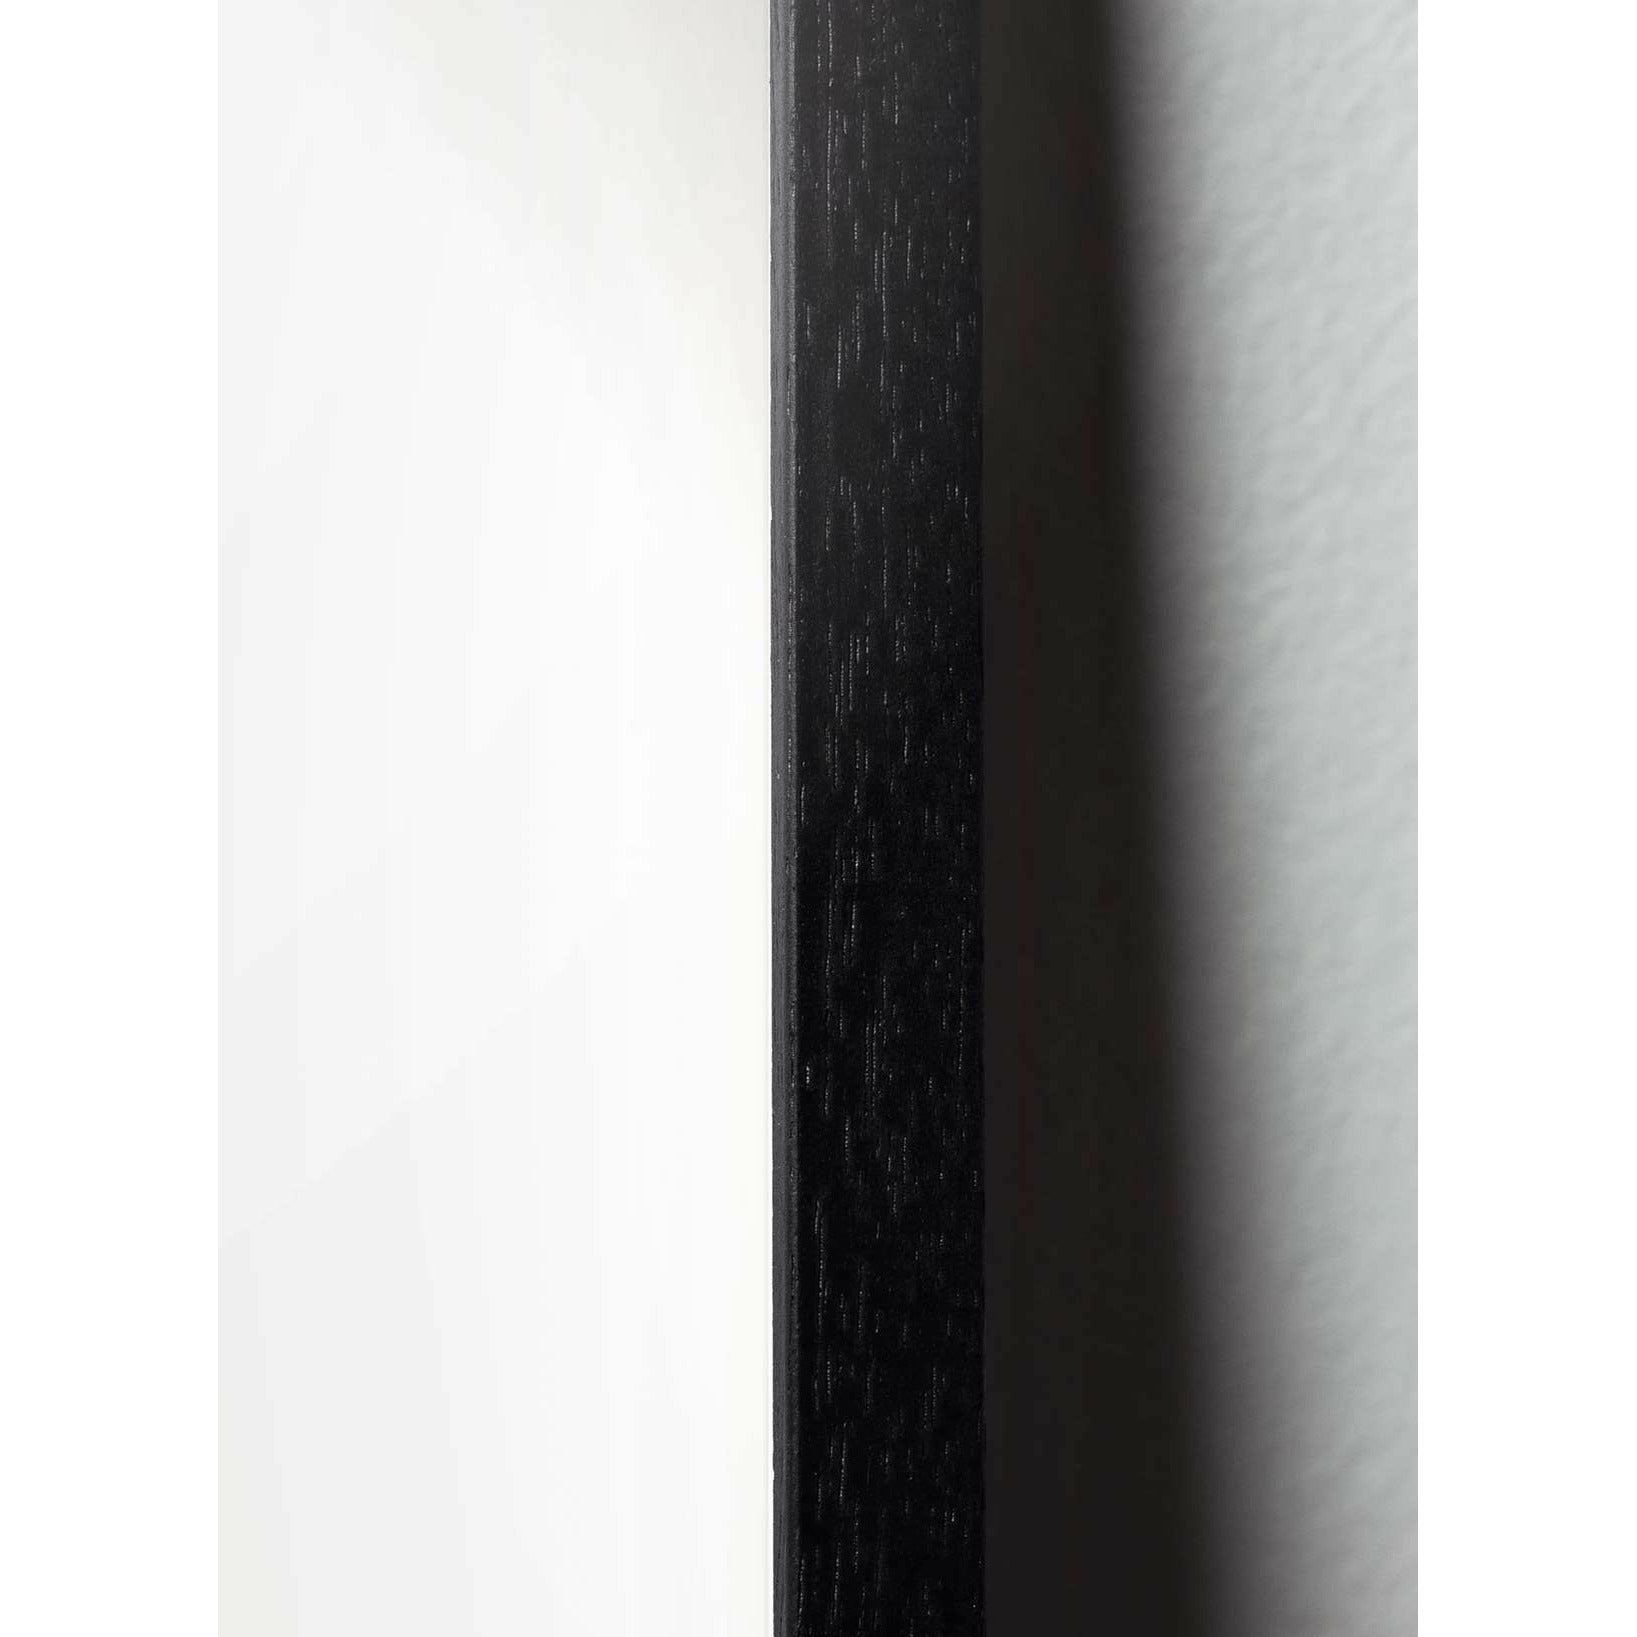 Brainchild Äggslag affisch, ram i svart målat trä 30x40 cm, vit bakgrund